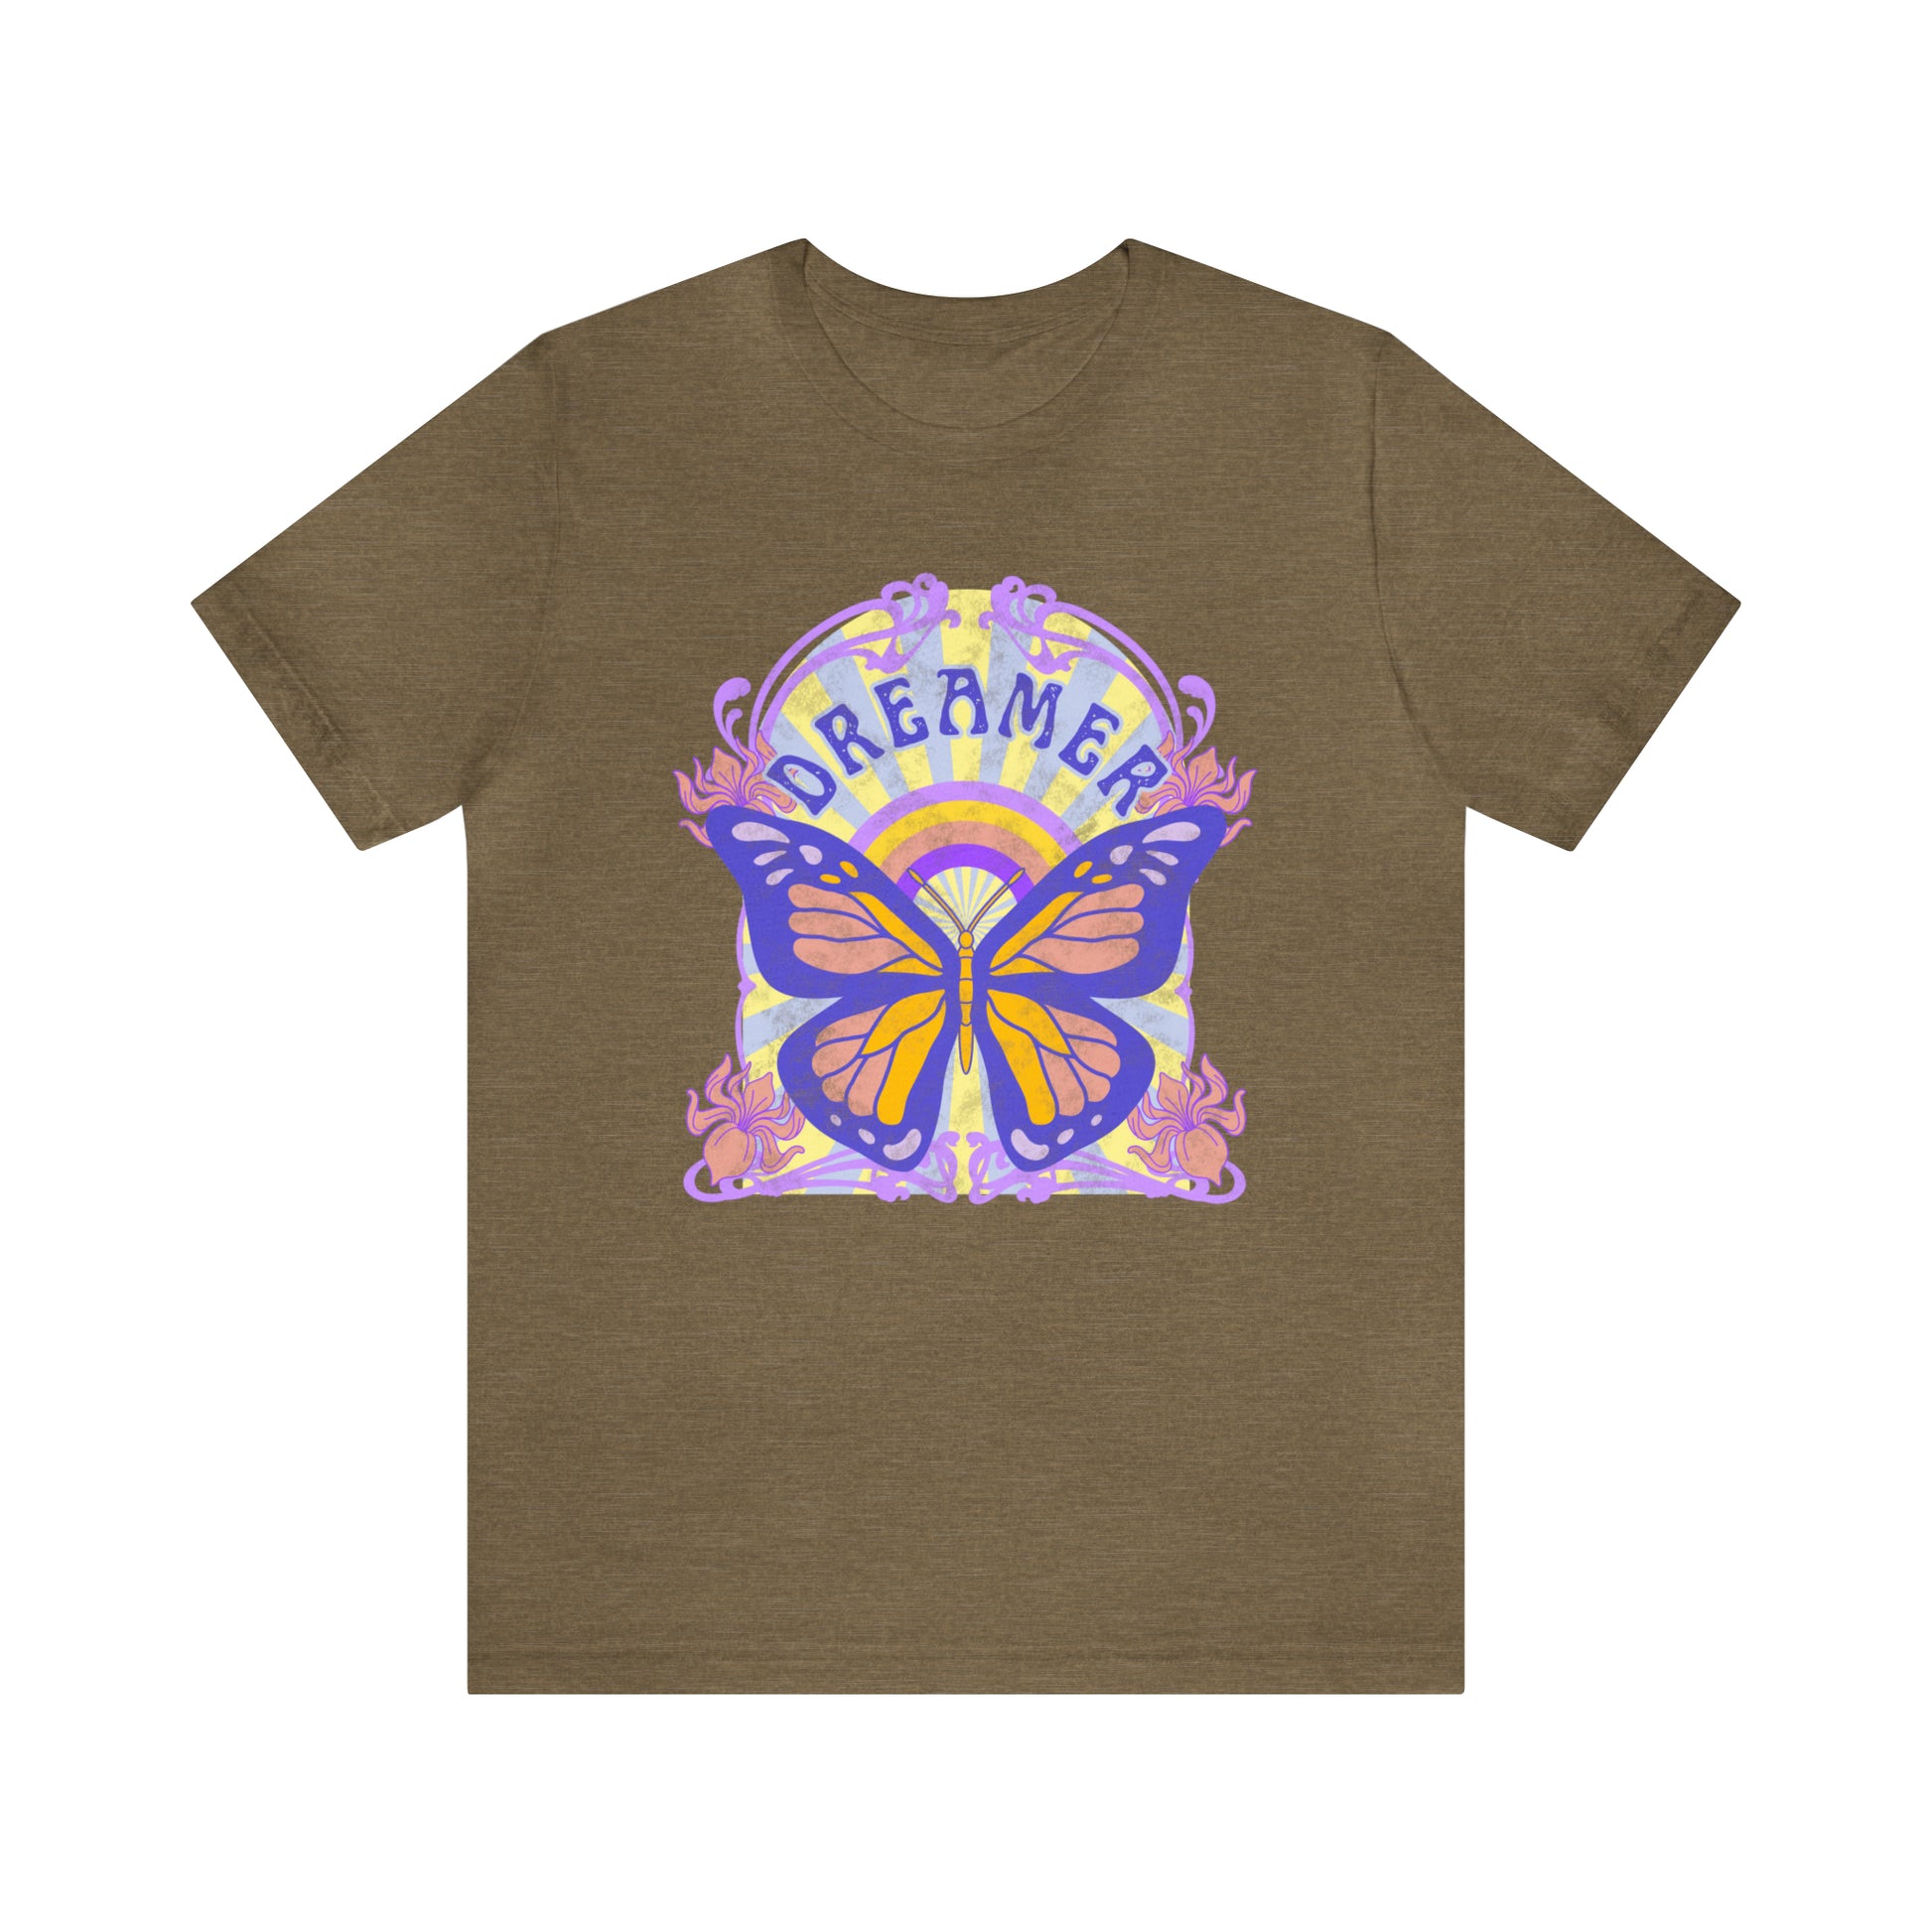 Dreamer Butterfly Art Nouveau Shirt Bella & Canvas - Fractalista Designs